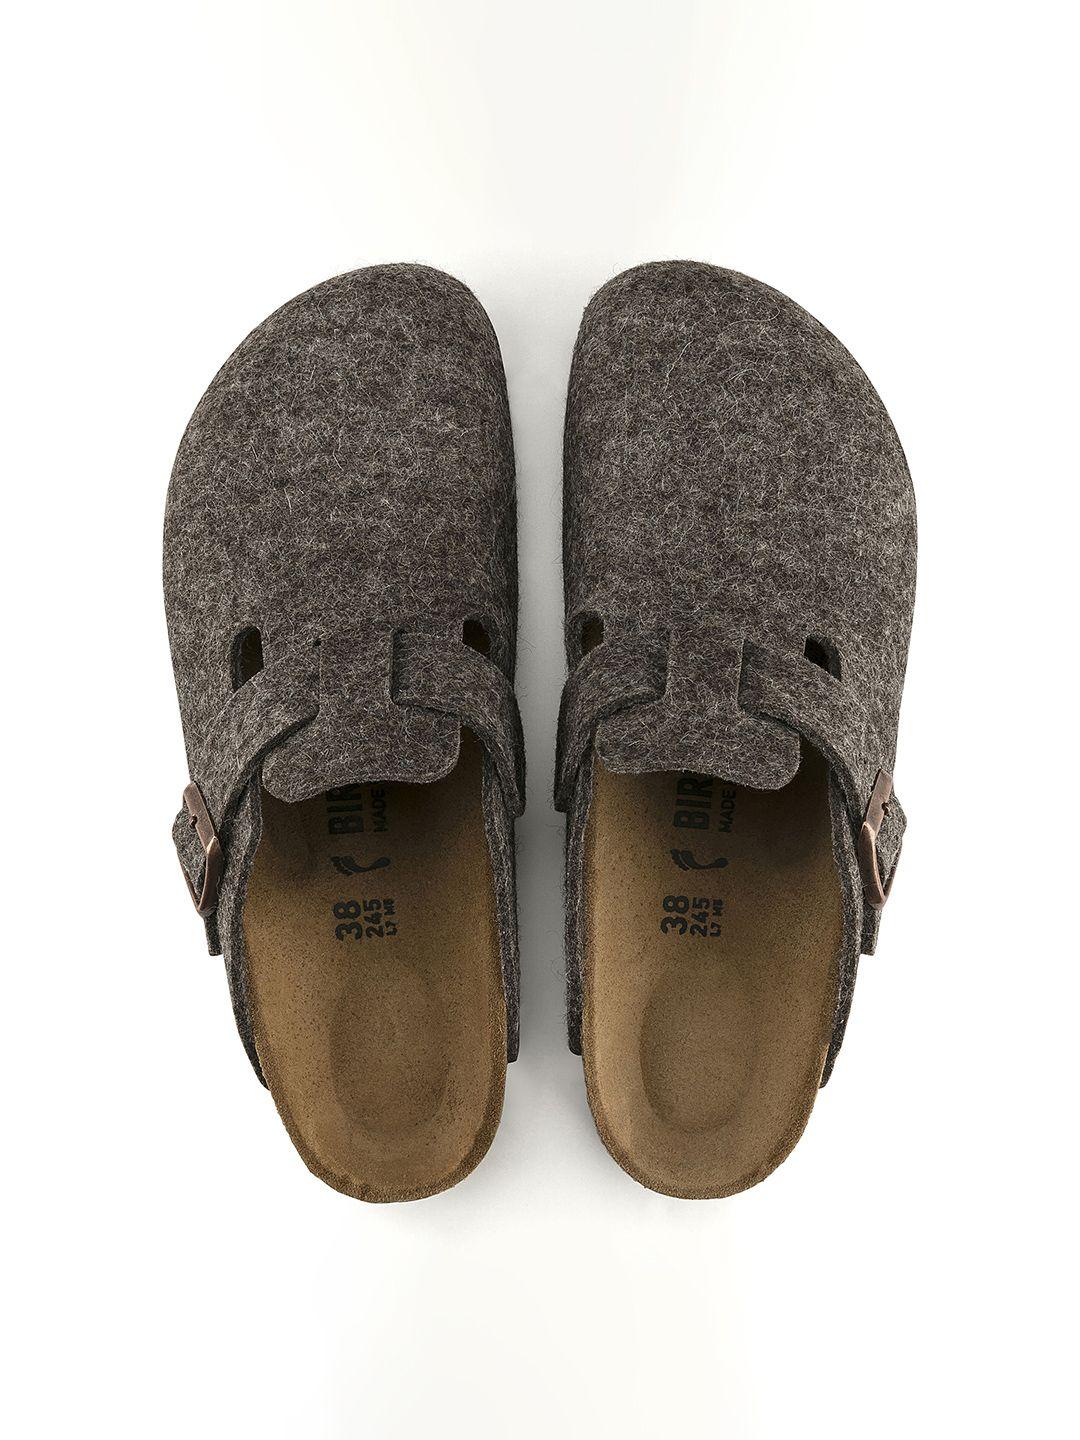 birkenstock unisex brown clogs narrow width sandals